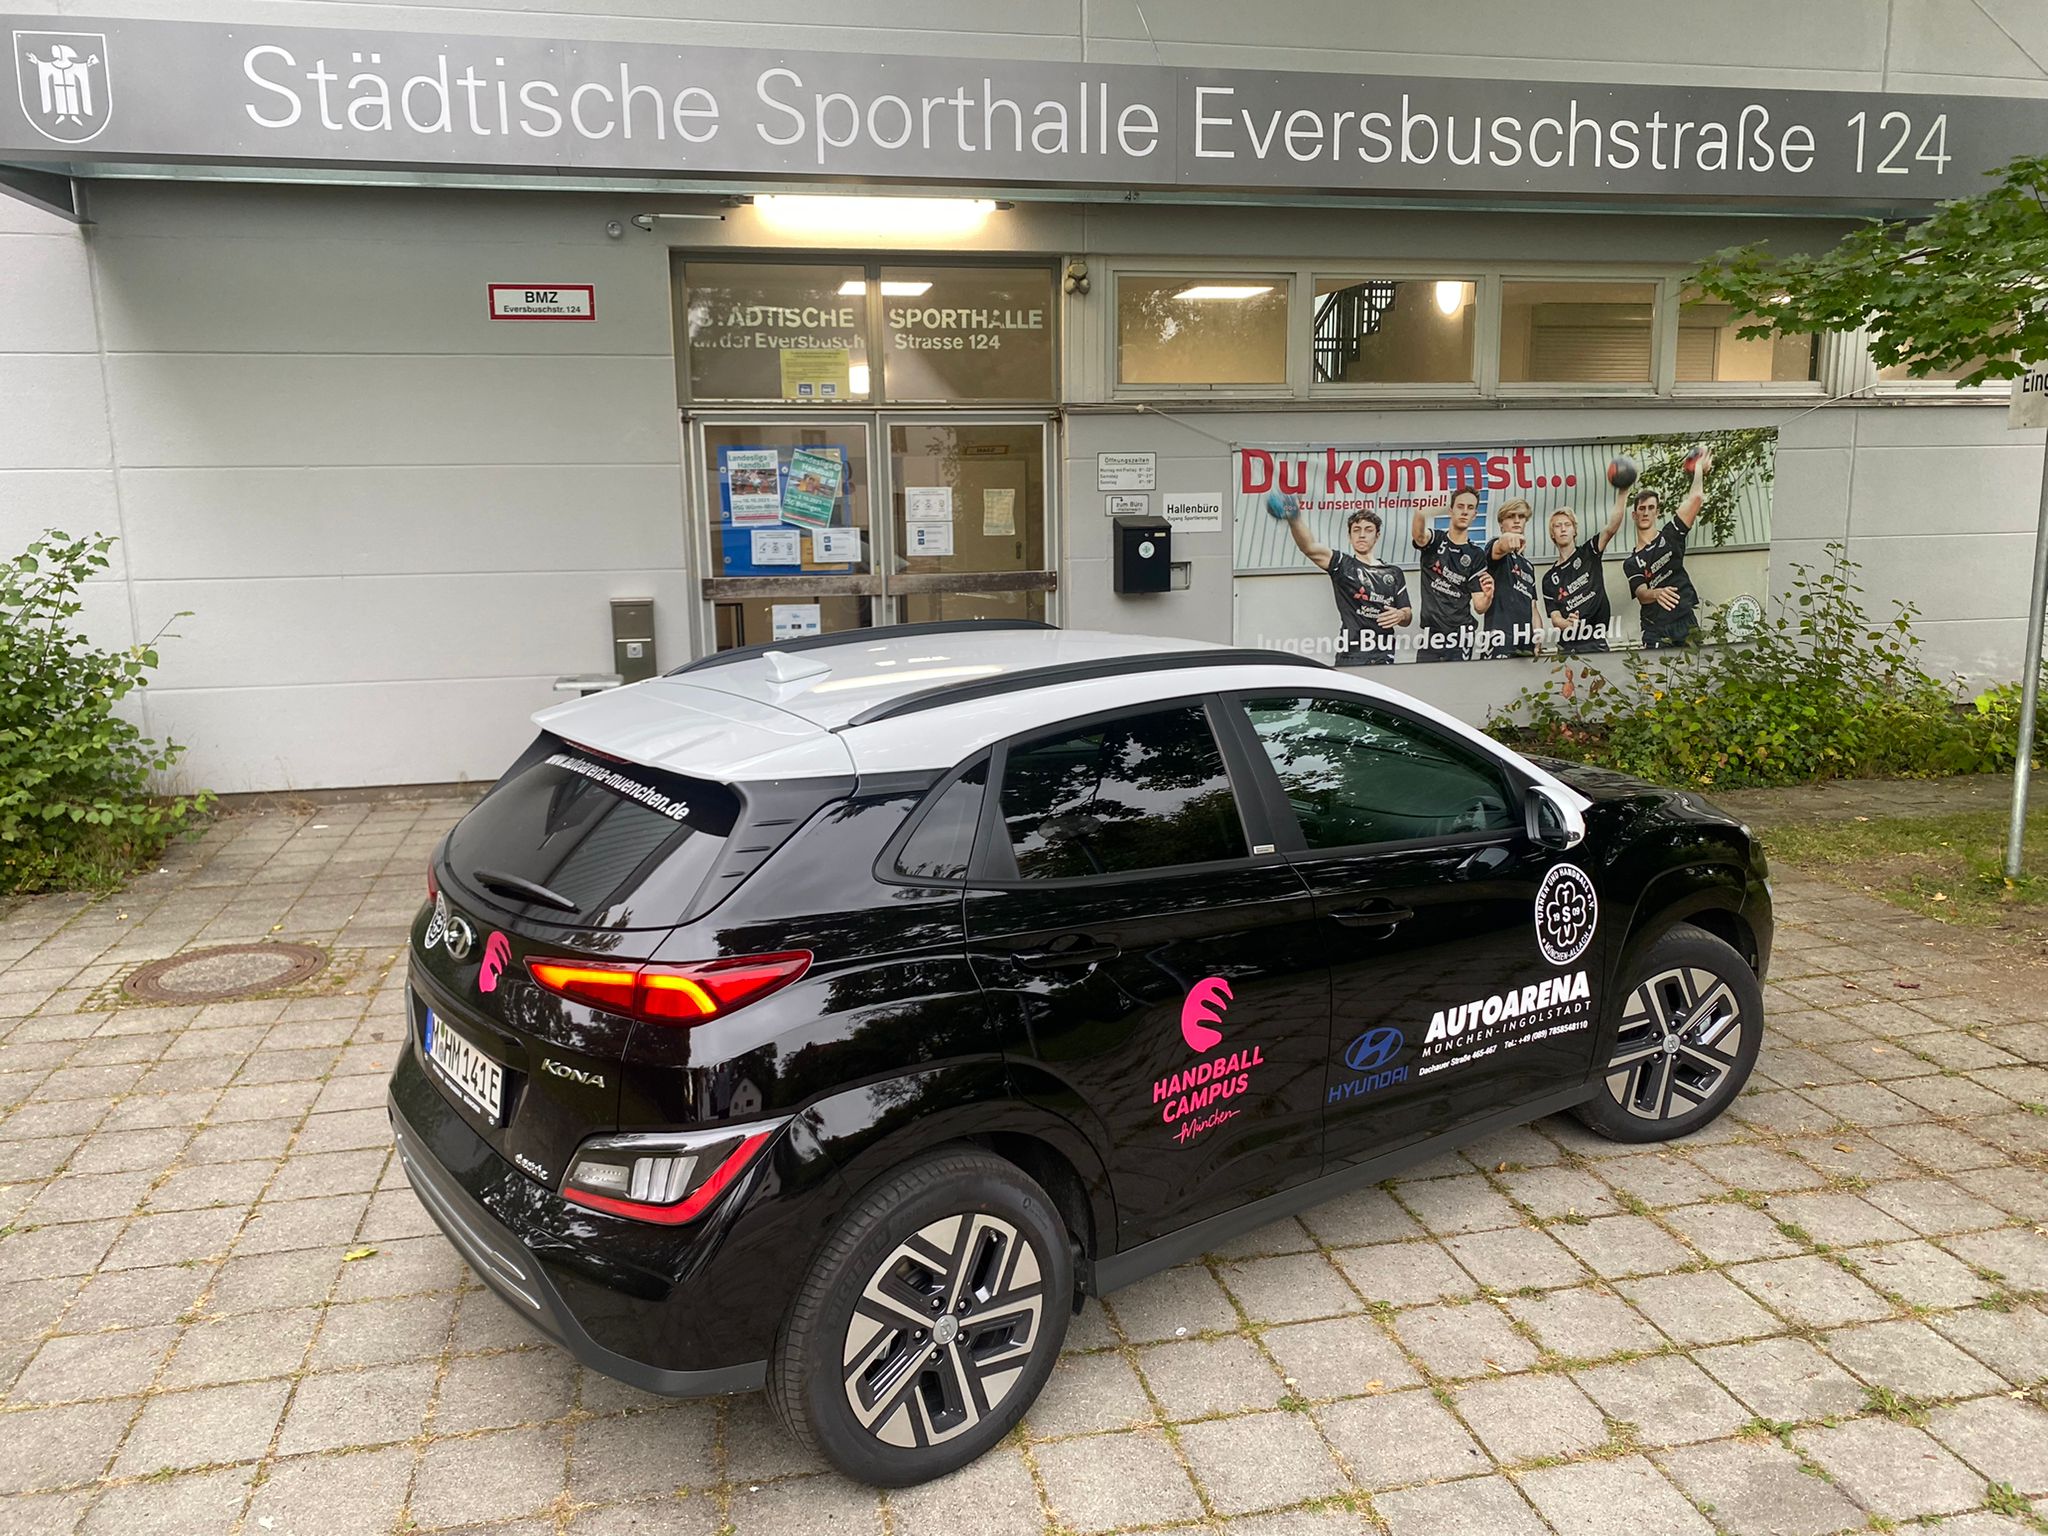 Partner der Mobilität - Autoarena München